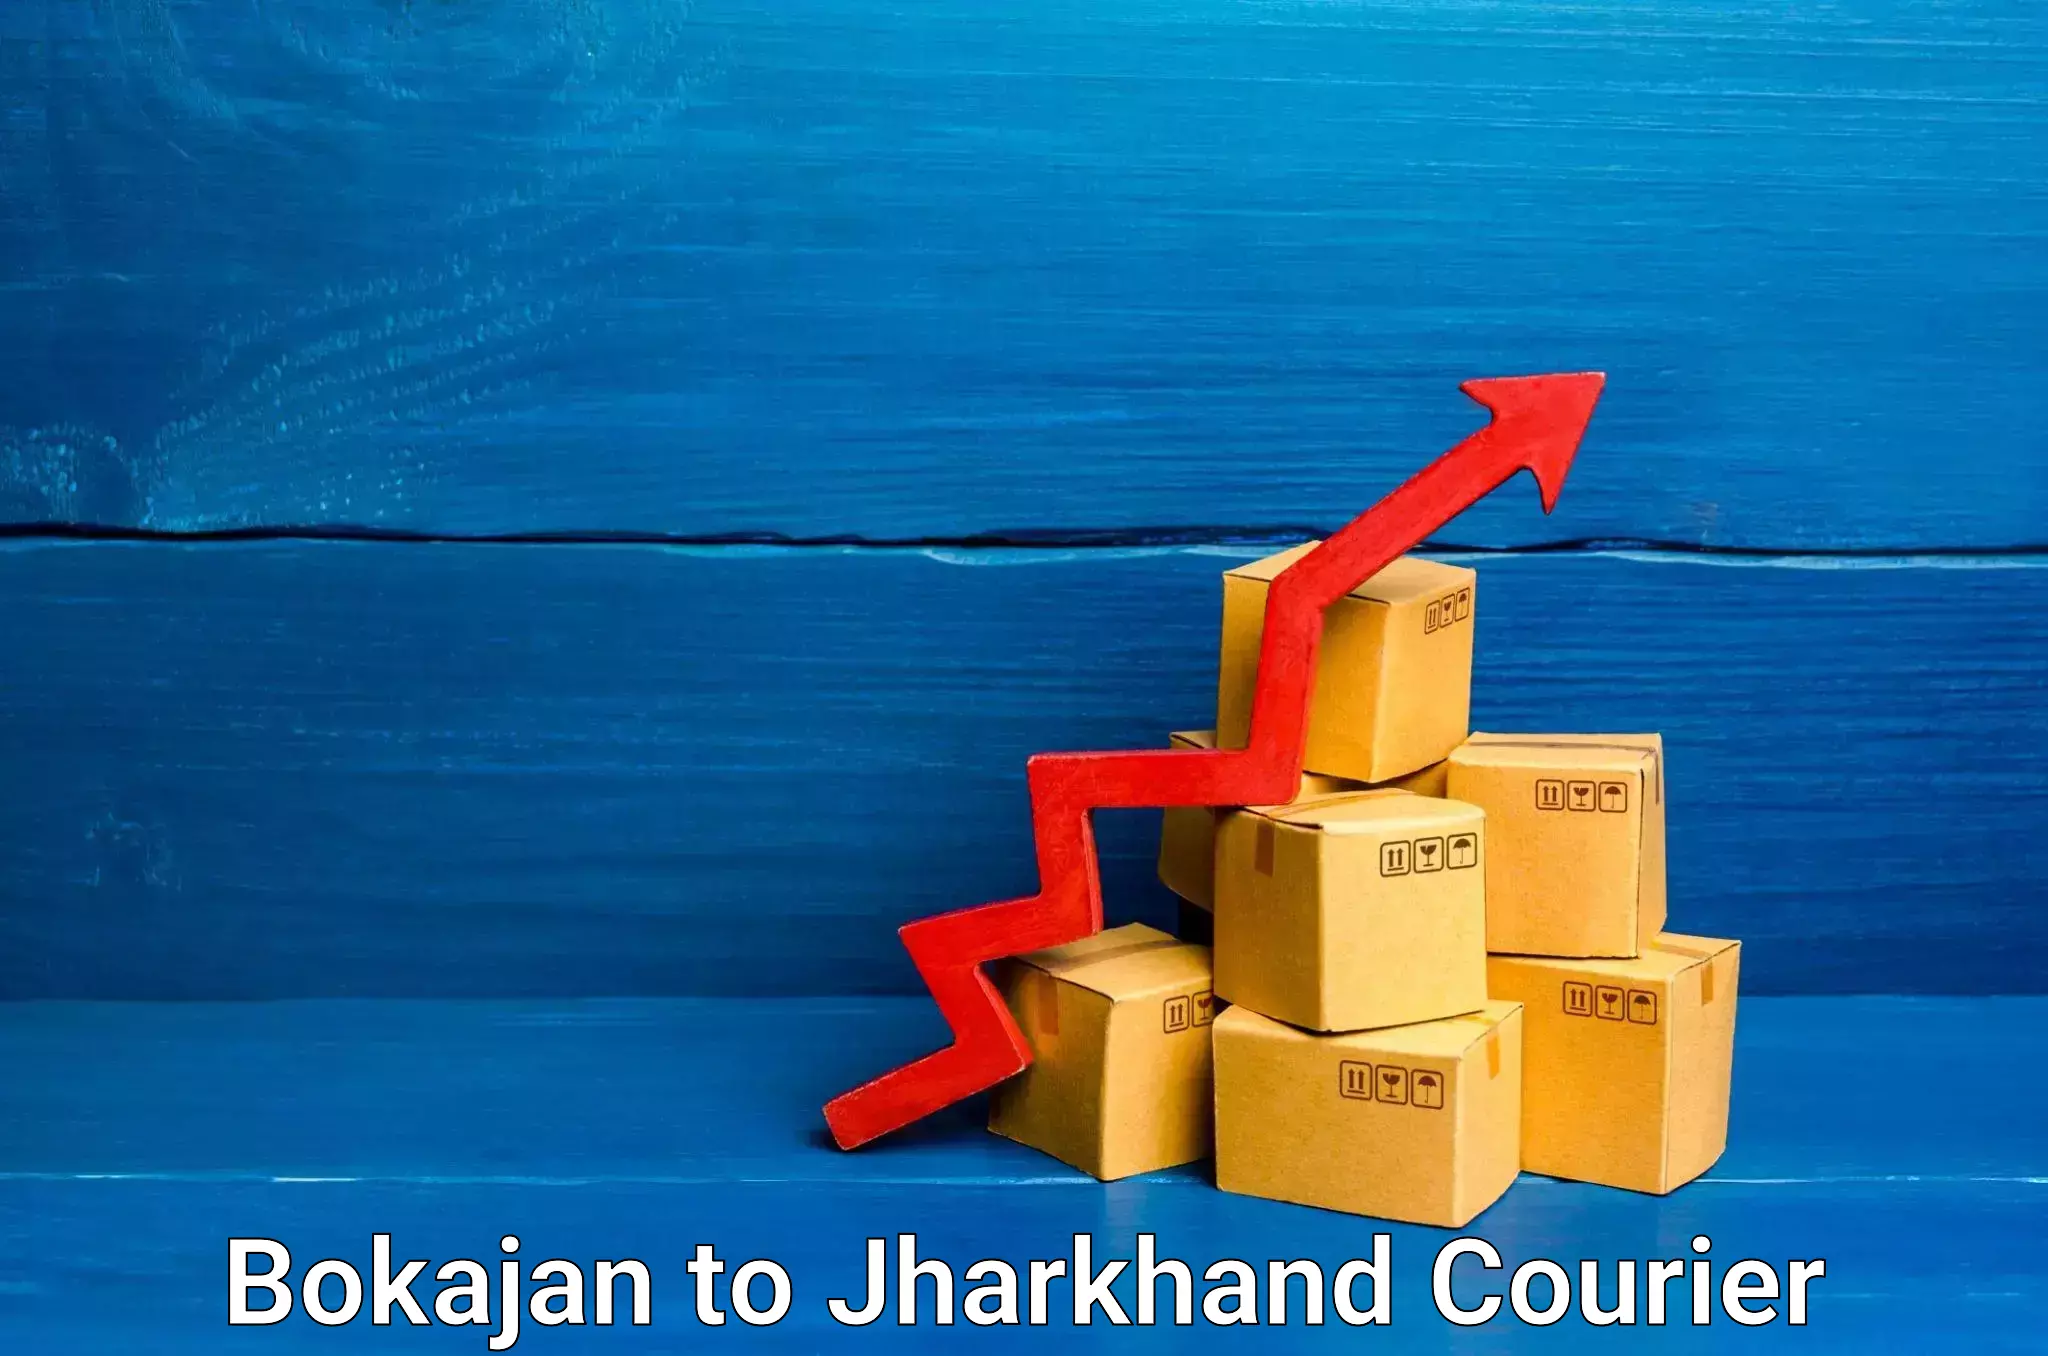 Cost-effective courier options in Bokajan to Jamshedpur